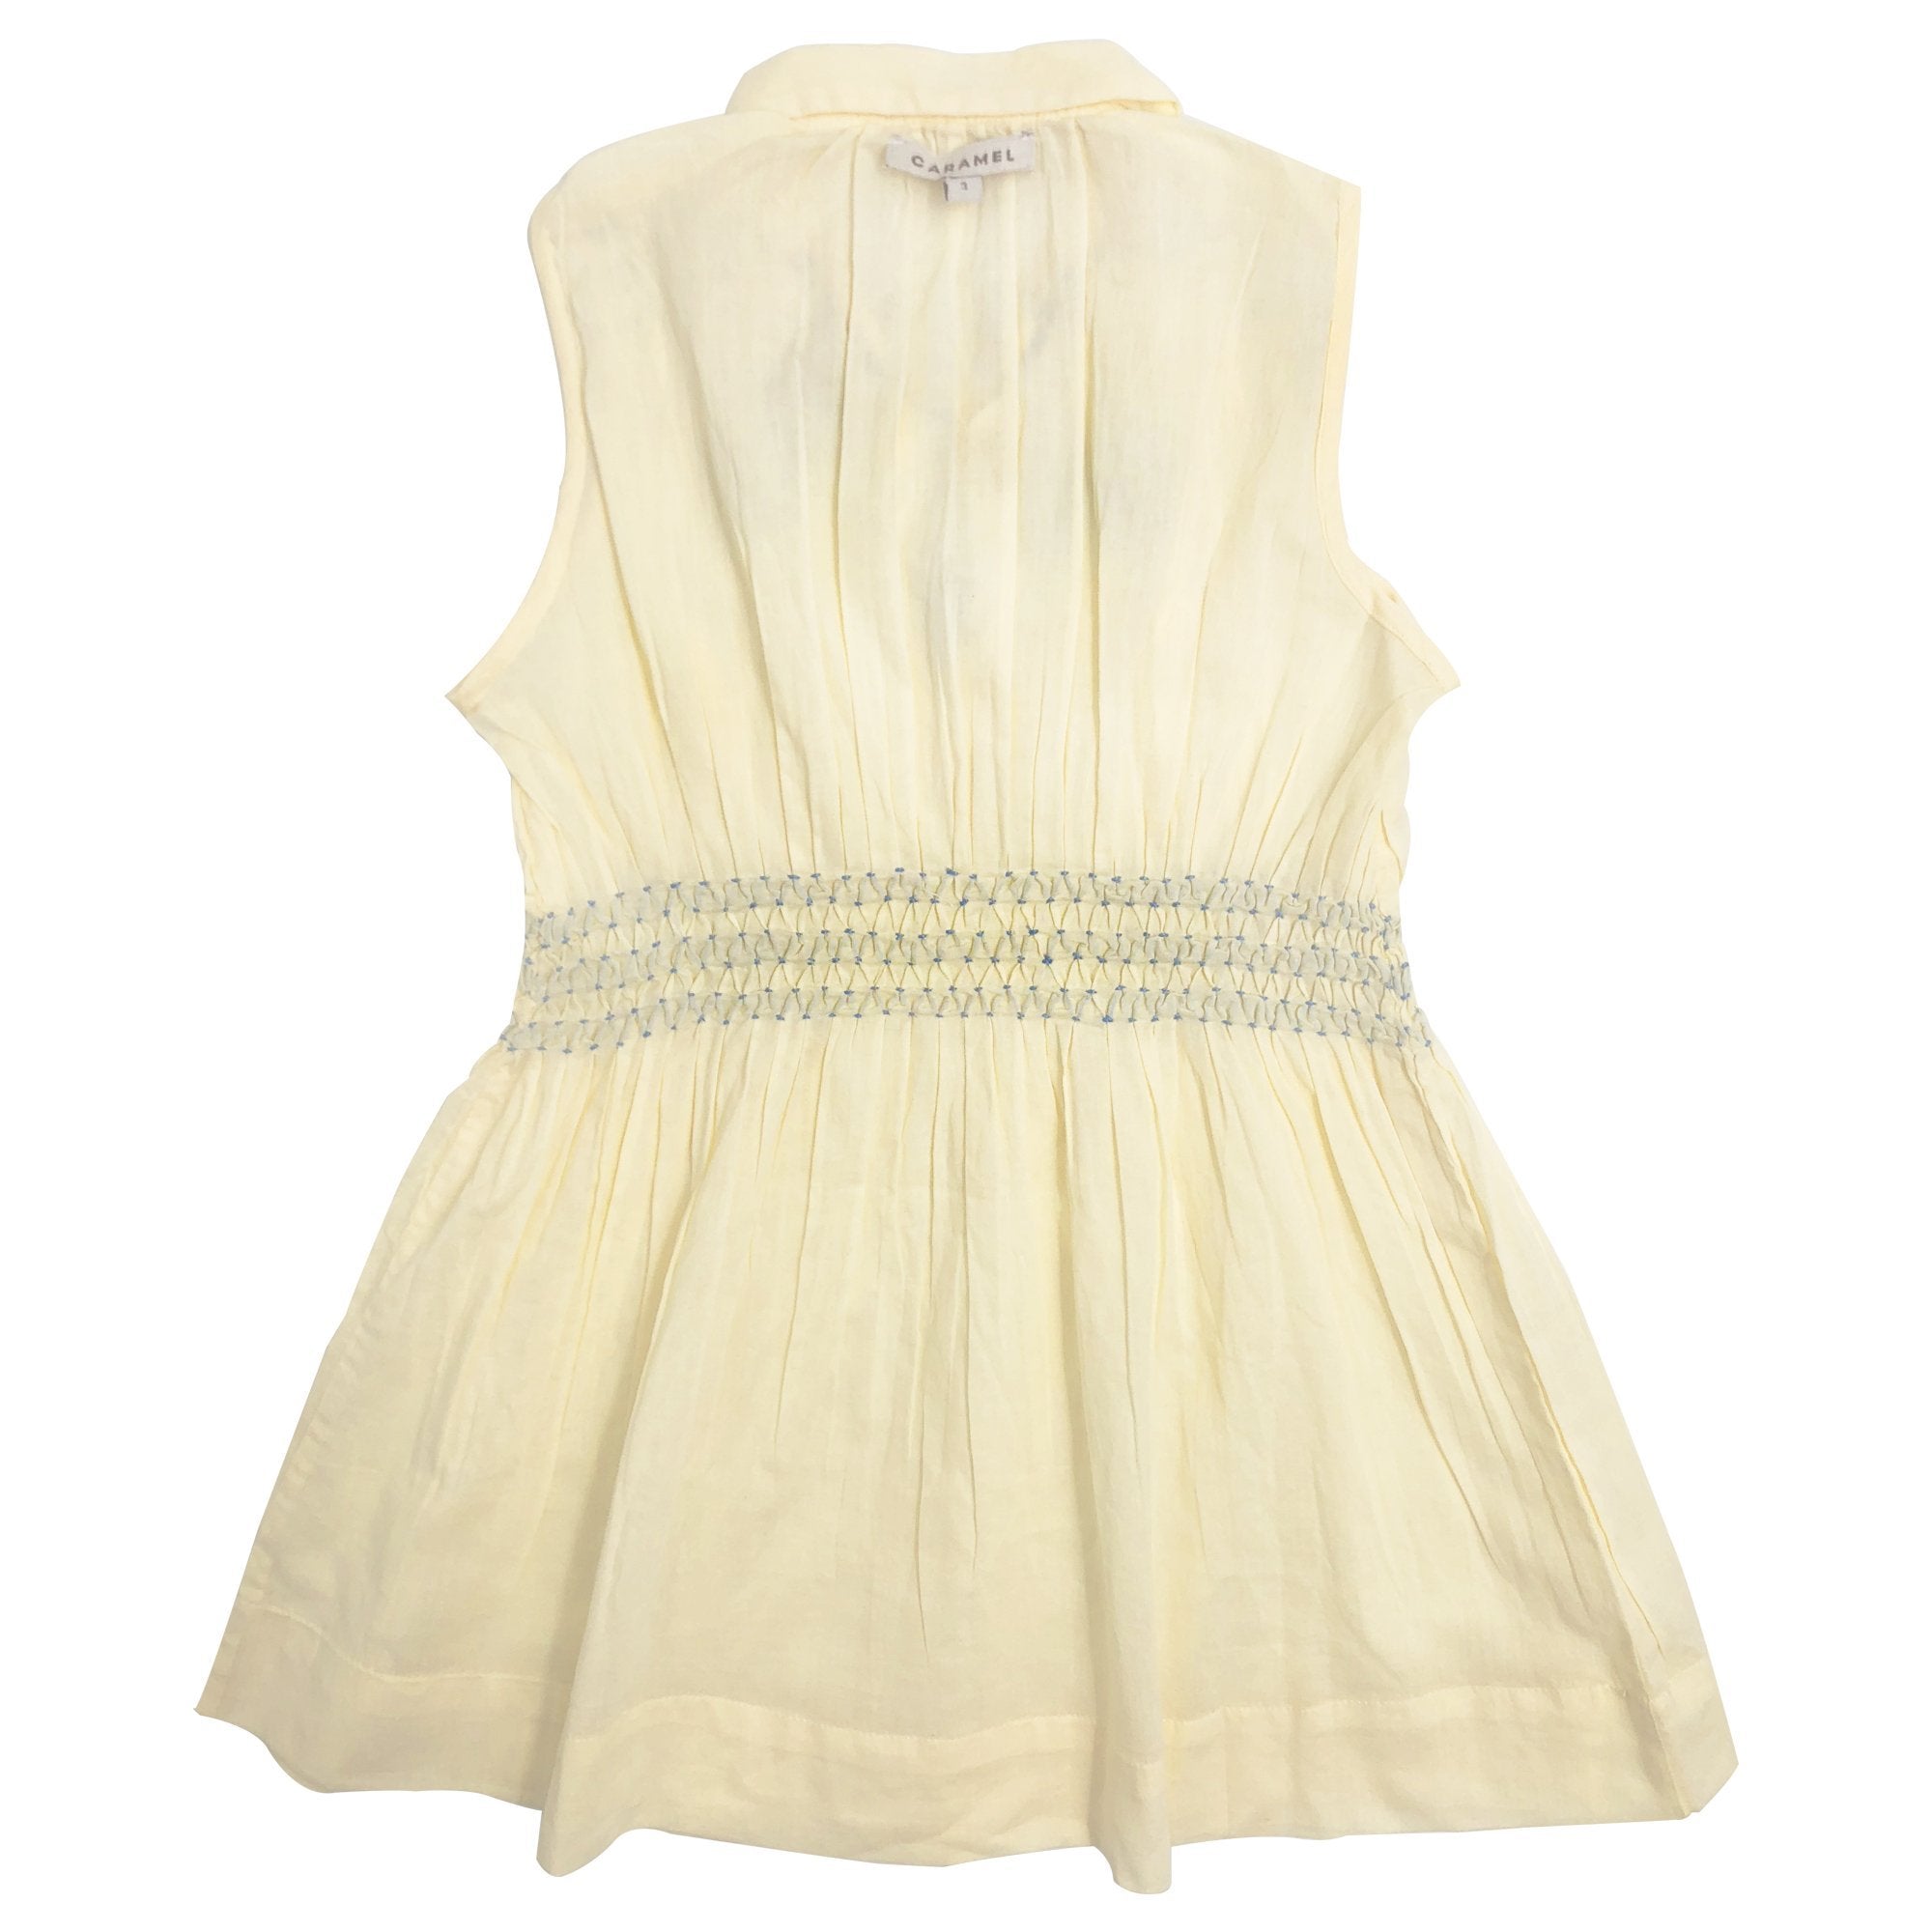 Girls Light Yellow Cotton Woven Dress